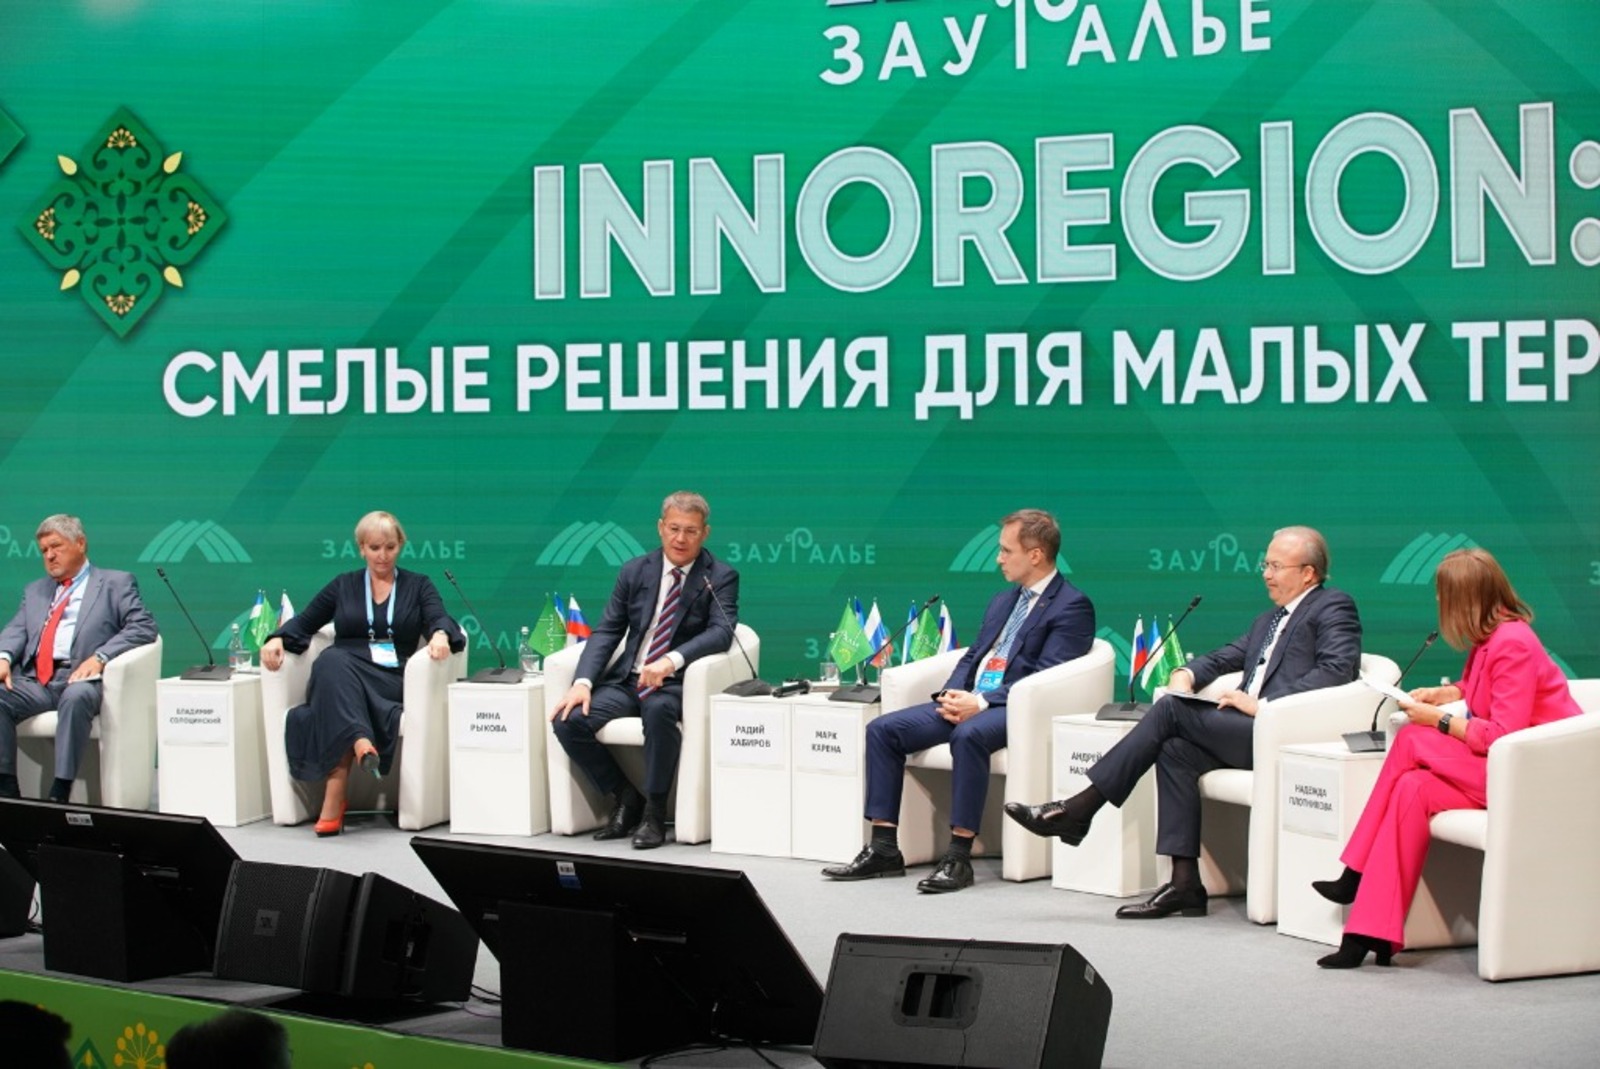 Пленарное заседание третьего Всероссийского инвестиционного сабантуя «Зауралье»